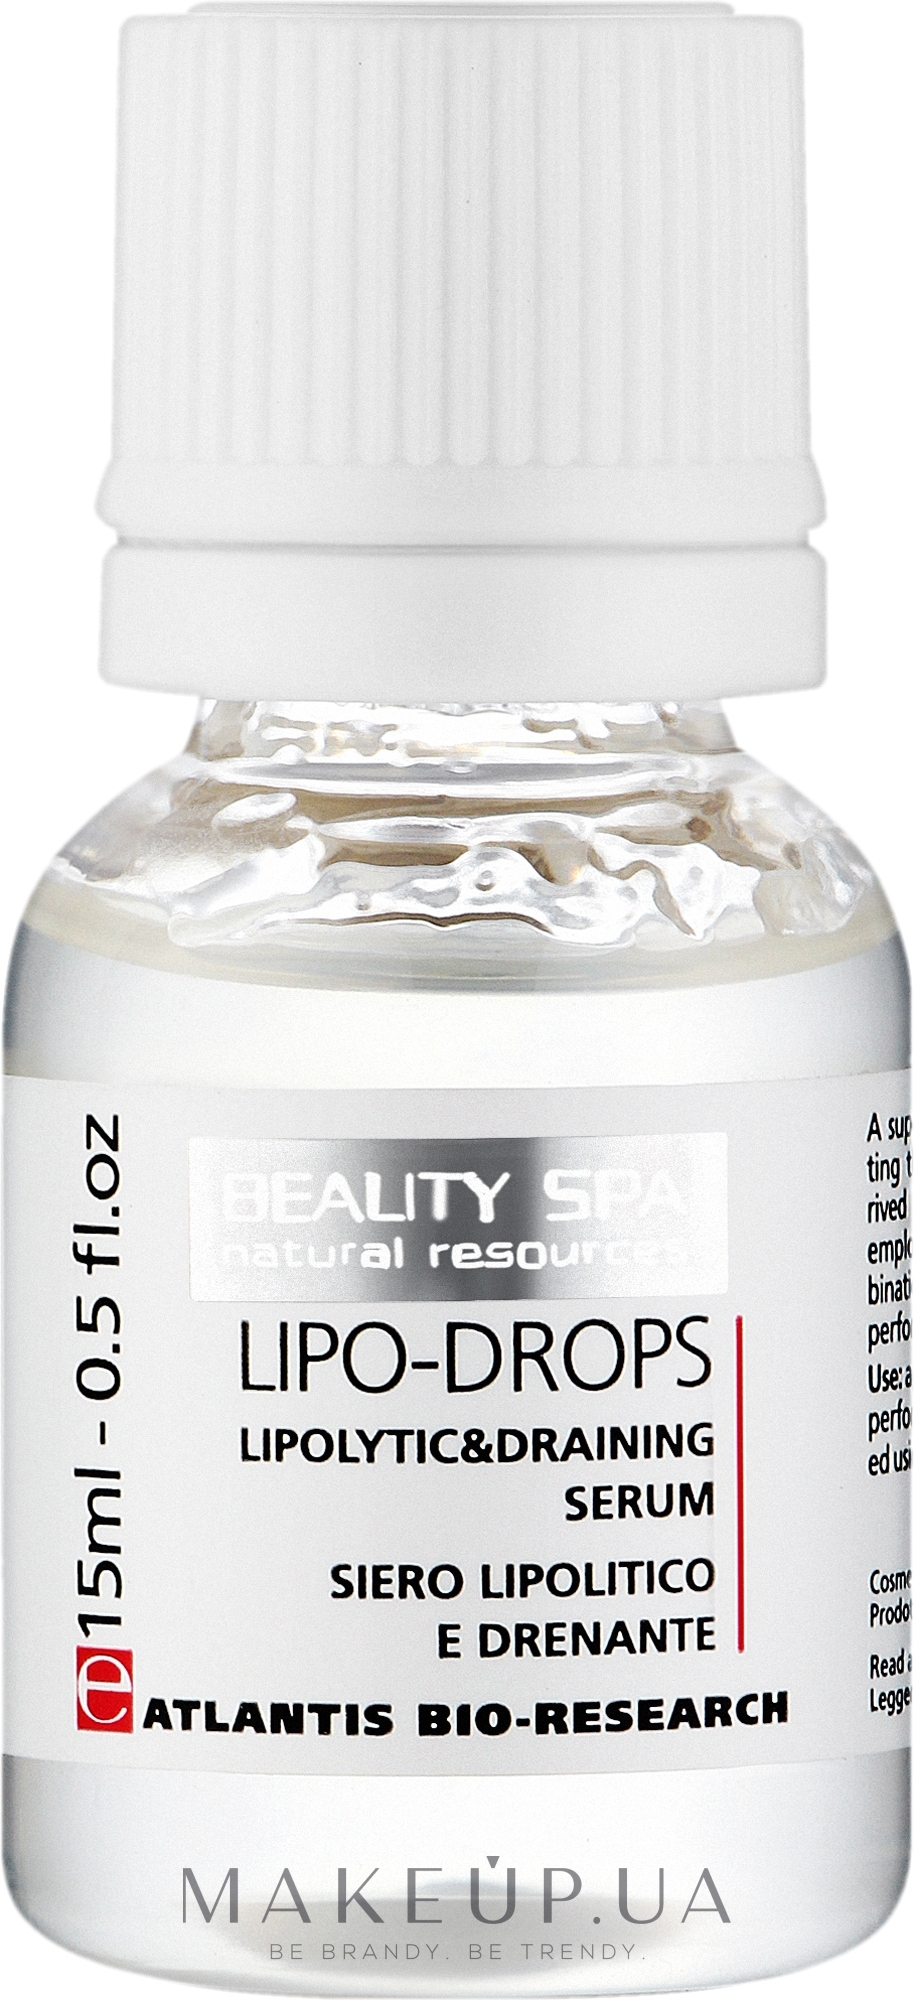 Липолитическая дренажная сыворотка для лица и тела - Beauty Spa Atlantis Lipo-Drops — фото 5x15ml